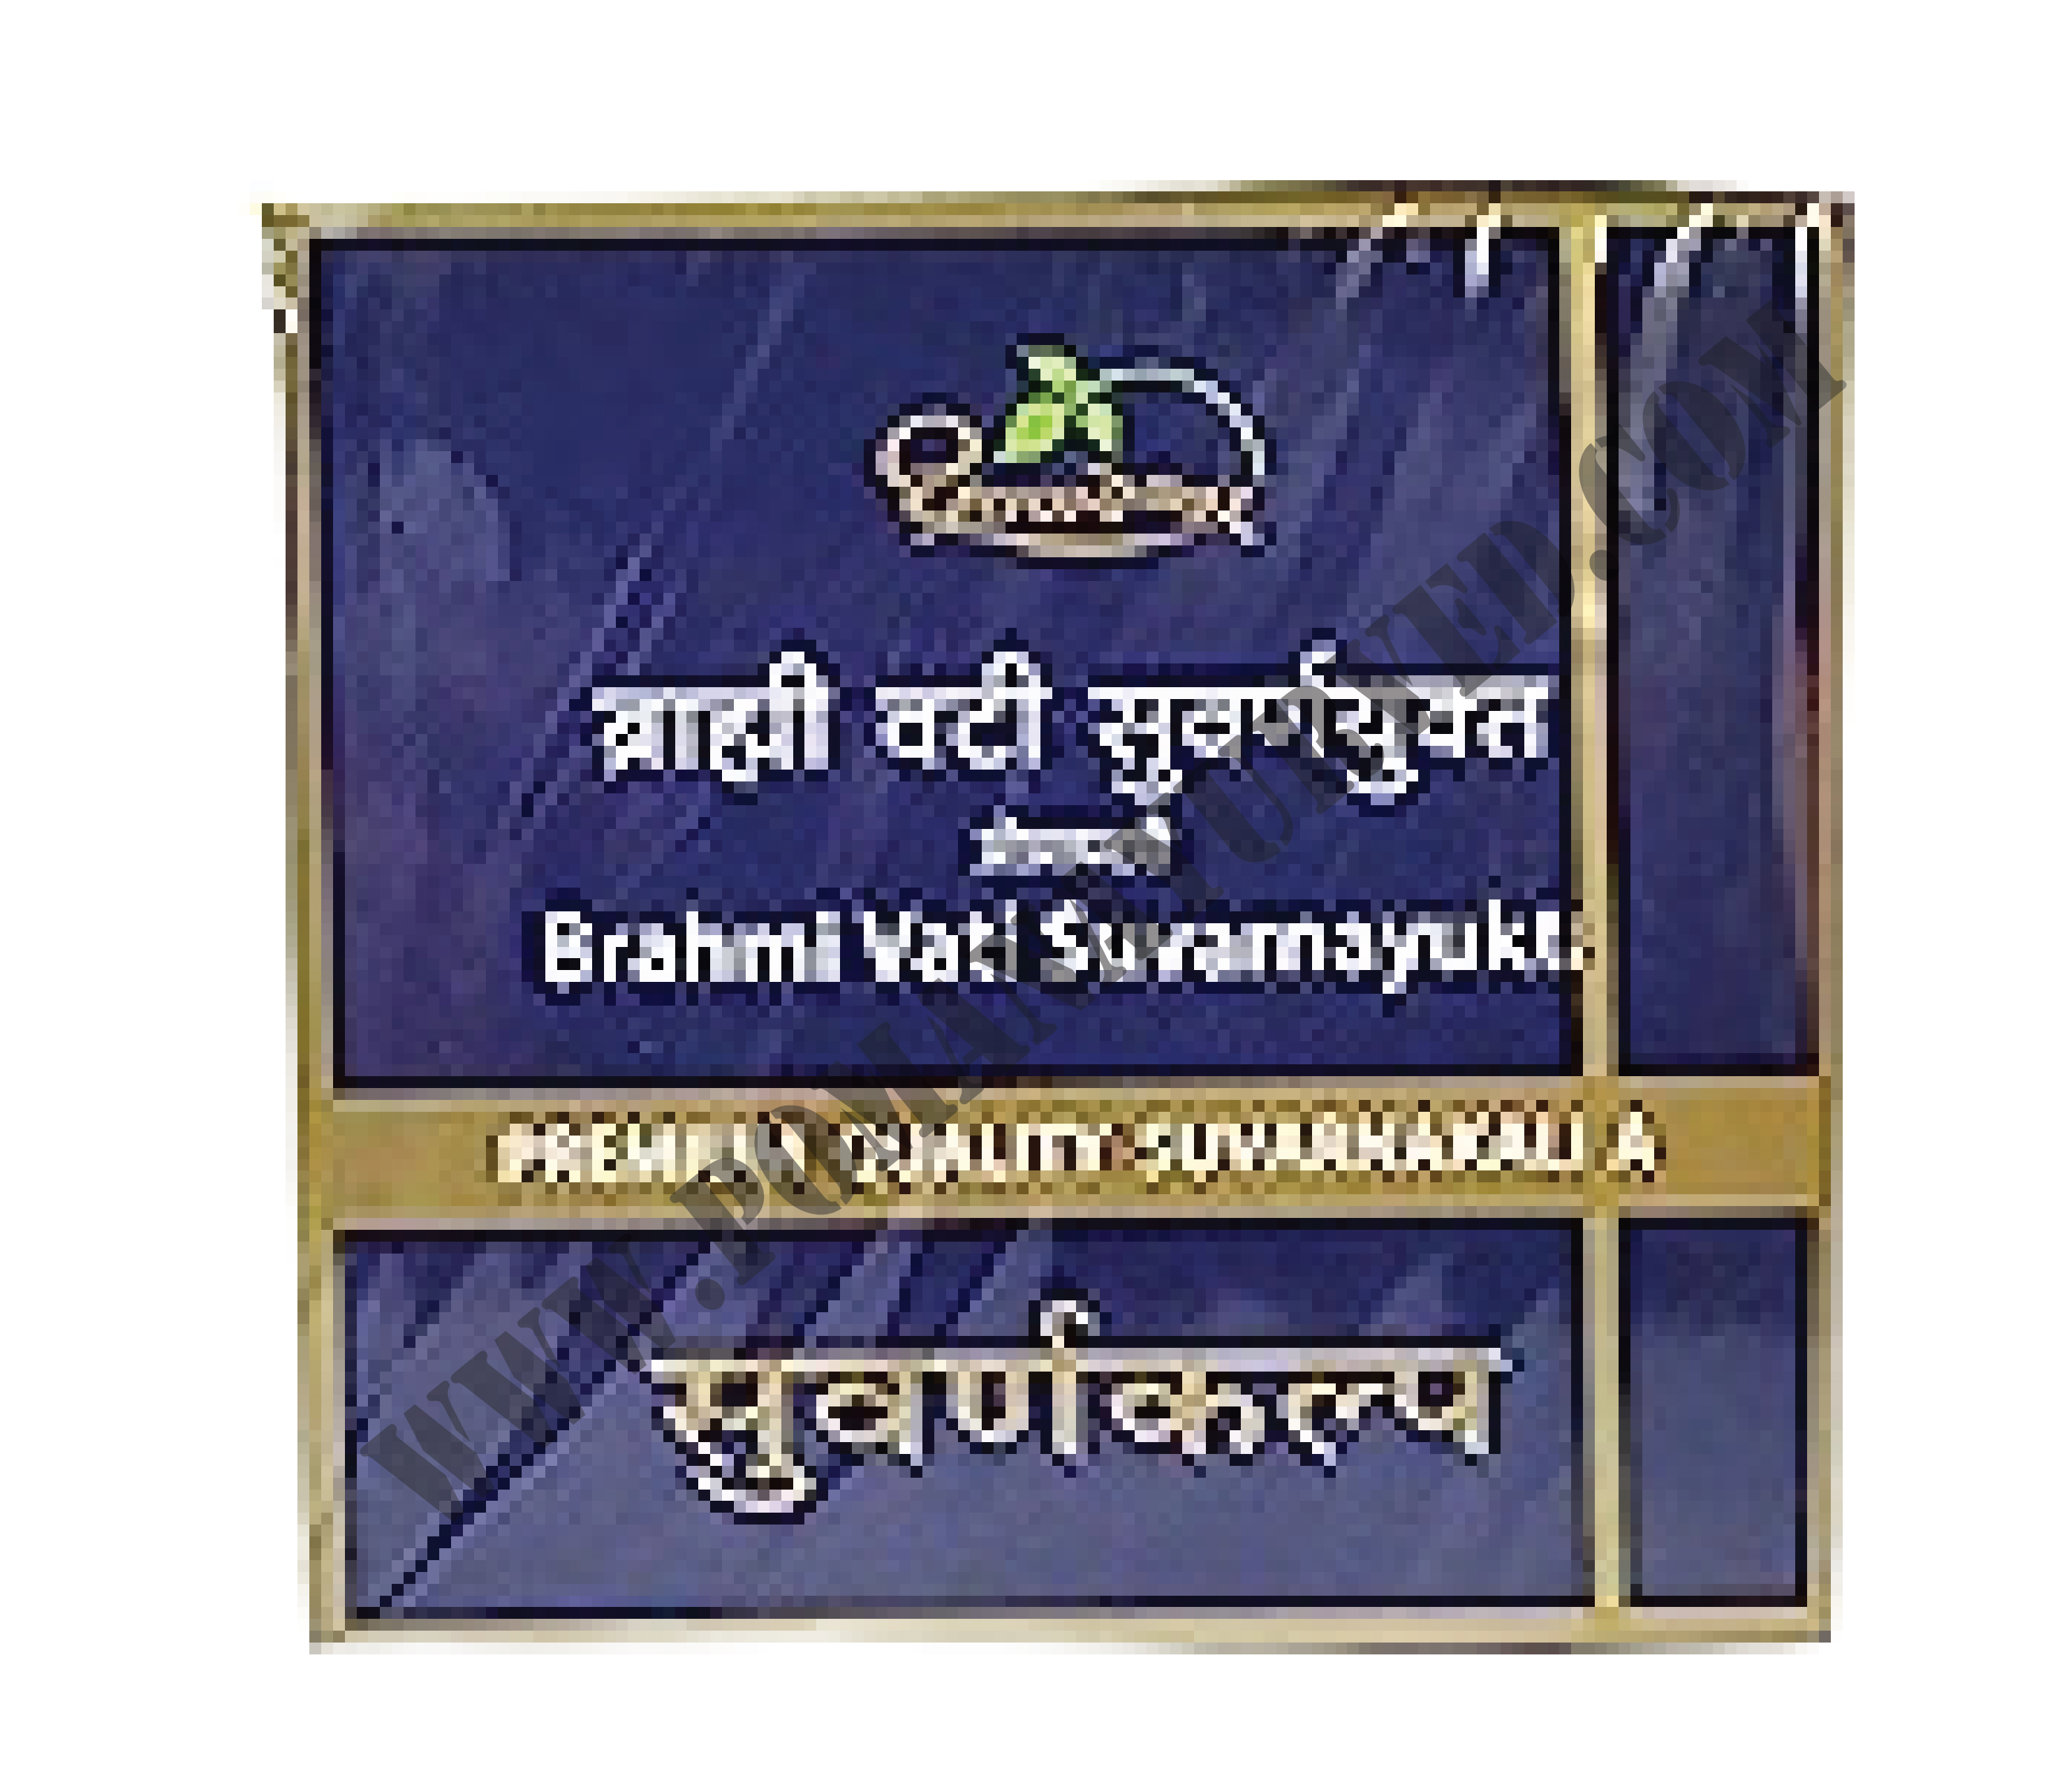 Picture of Brahmi Vati (S.Y) Dhut